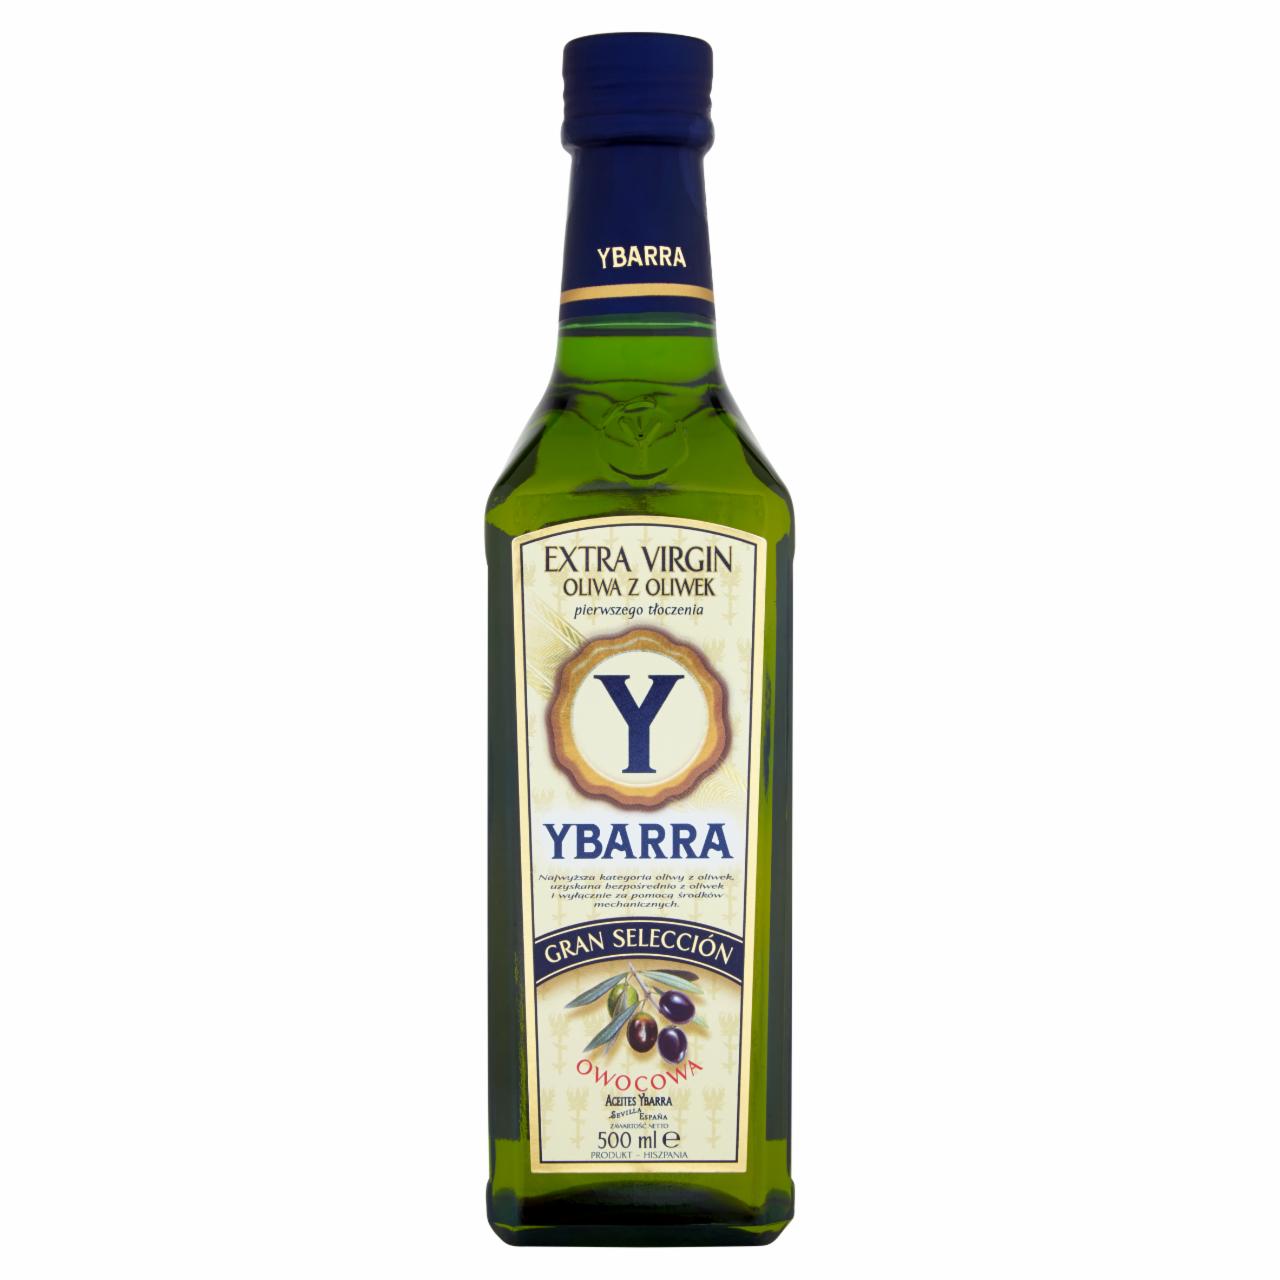 Zdjęcia - Ybarra Gran Selección Oliwa z oliwek najwyższej jakości z pierwszego tłoczenia 500 ml